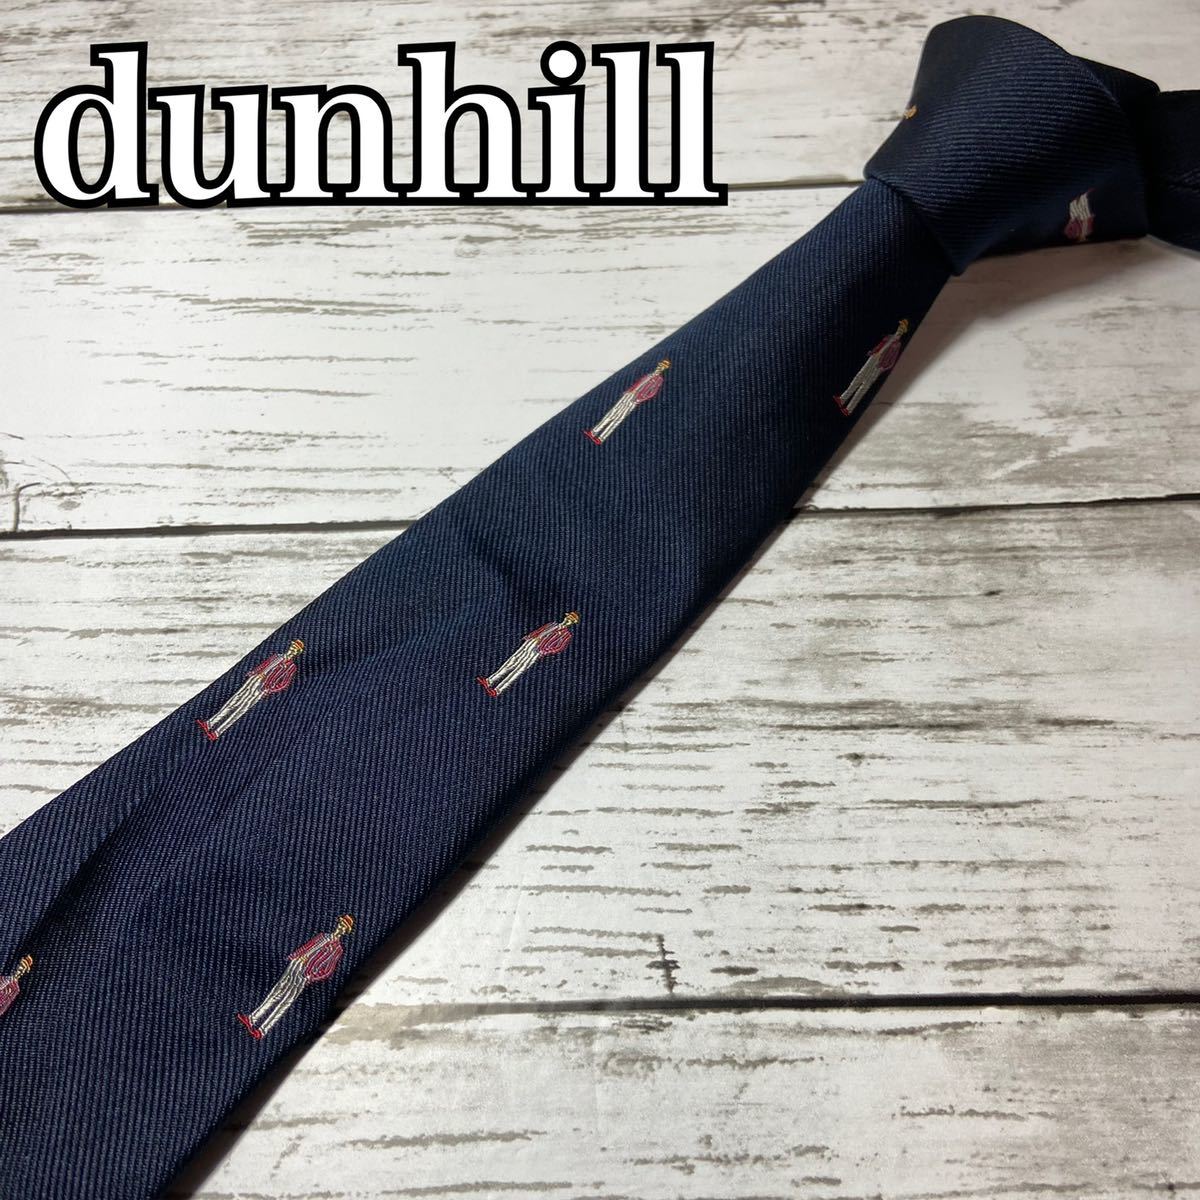 都内で dunhill ダンヒル ネクタイ 刺繍 dロゴ ネイビー スーツ ビジネス dロゴ イタリア製 結婚式 パーティー シルク ネクタイ 